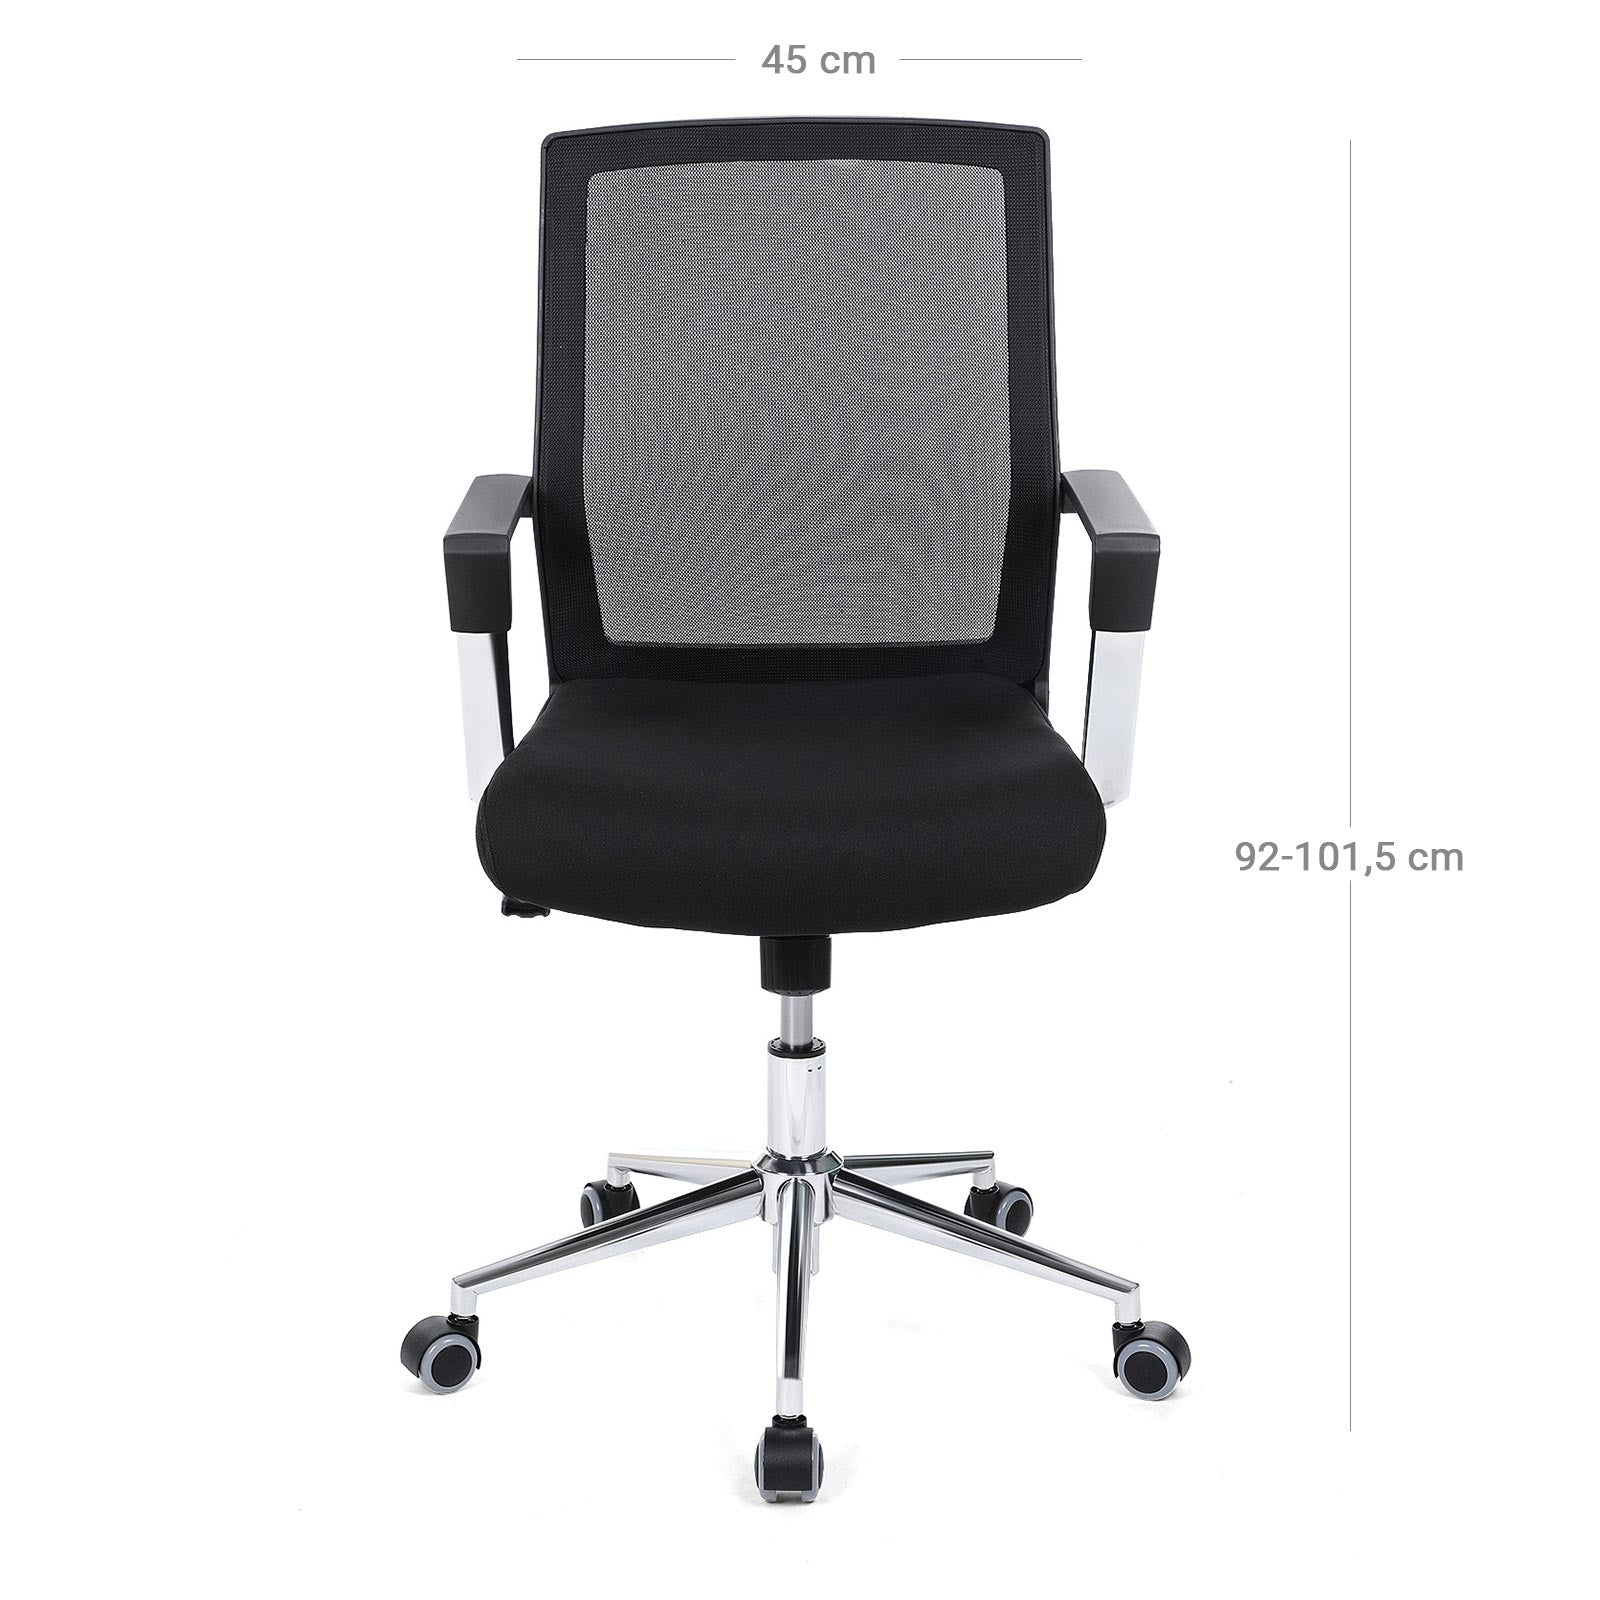 Sedia da ufficio con schienale in rete, funzione dondolo in nero, ideale per l'ufficio, A92-101.5 cm, L45 cm